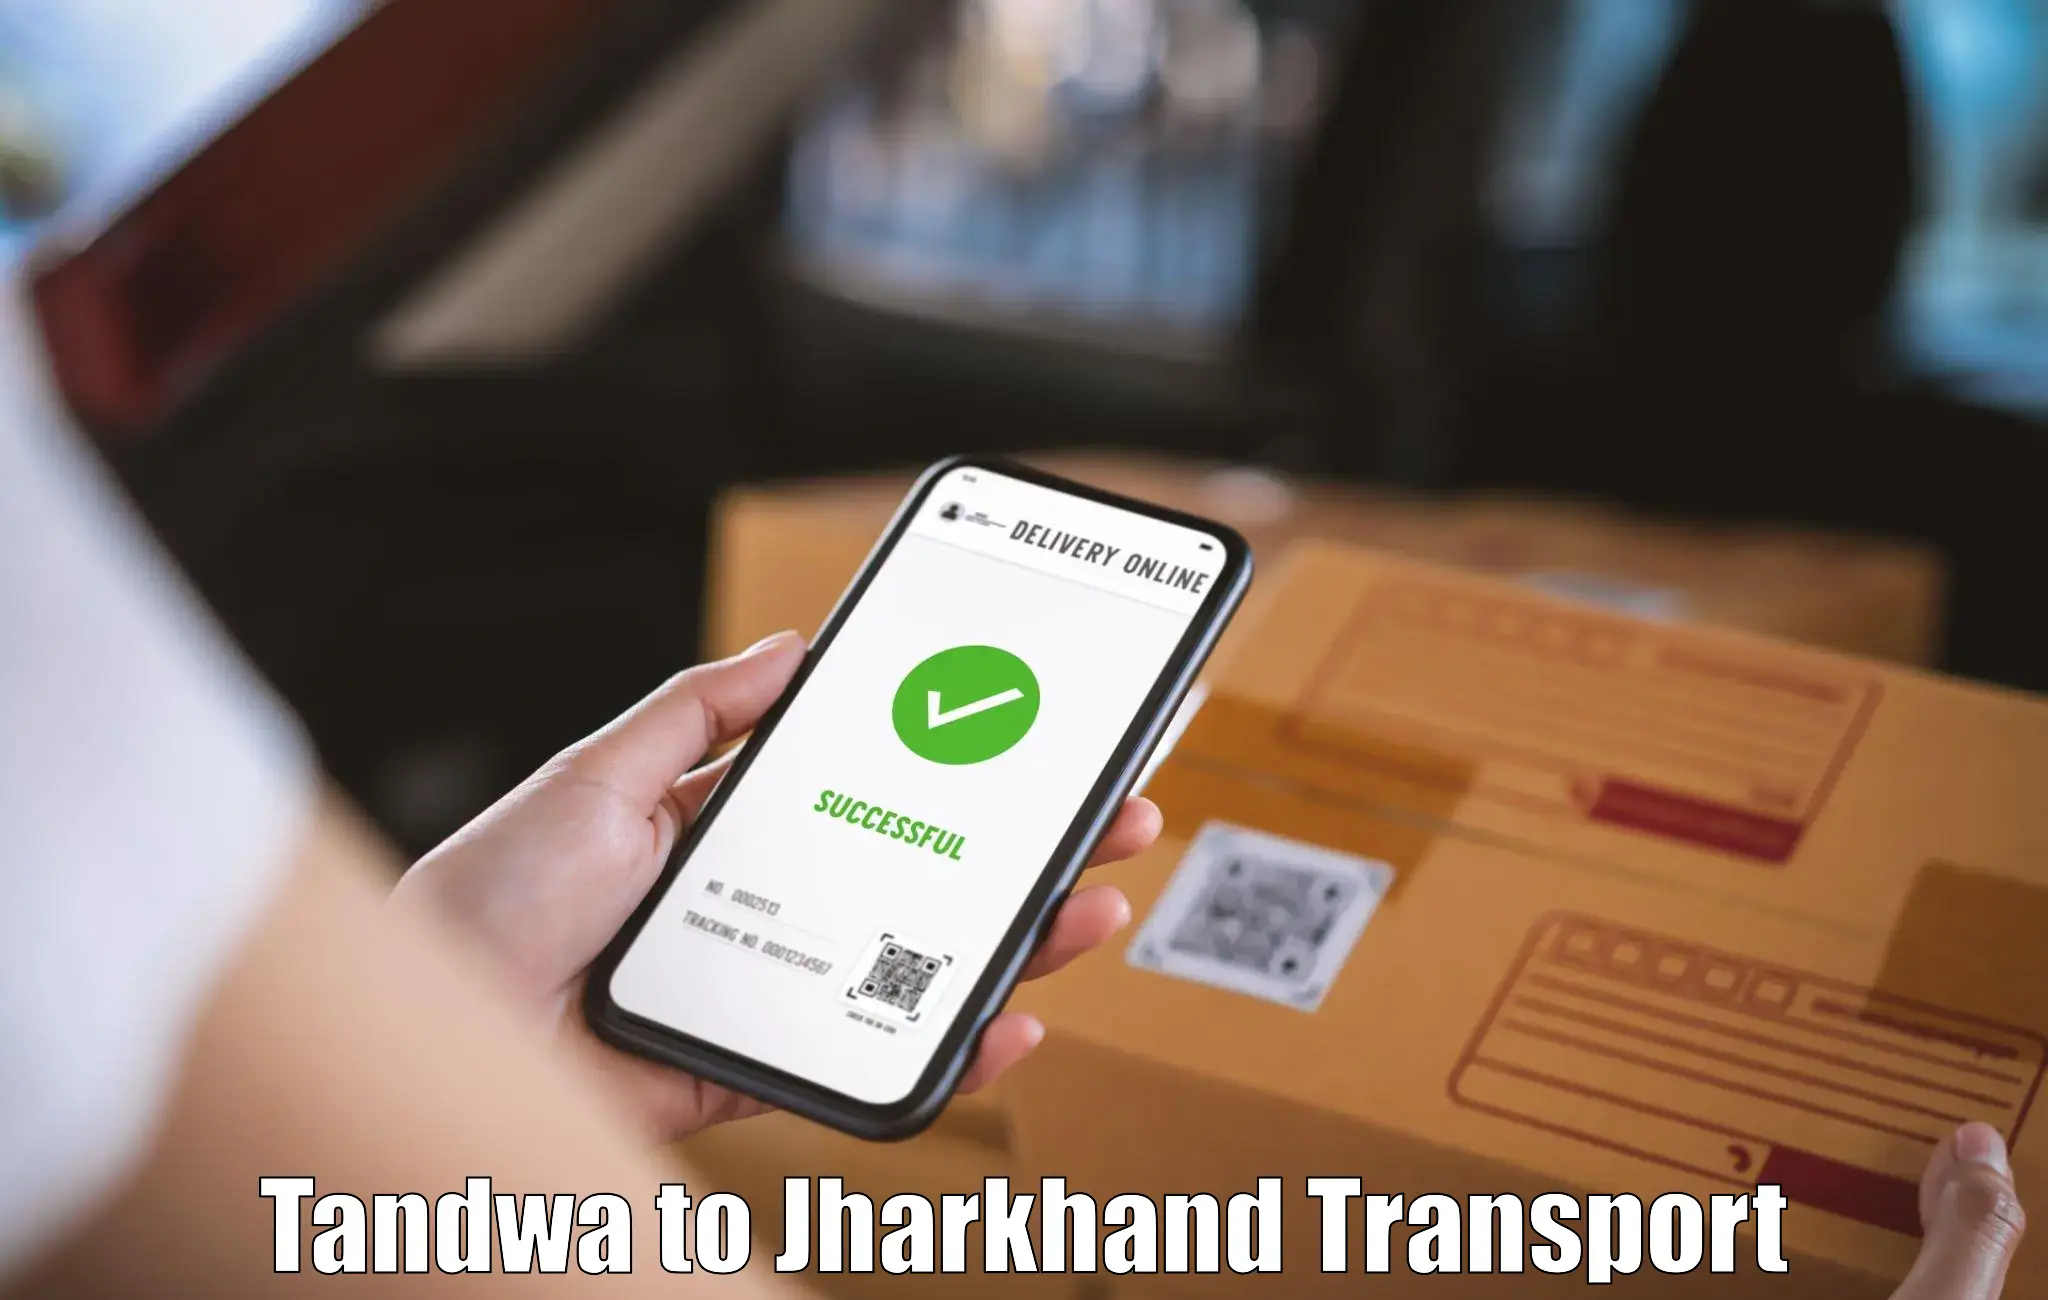 Transport in sharing Tandwa to Tandwa